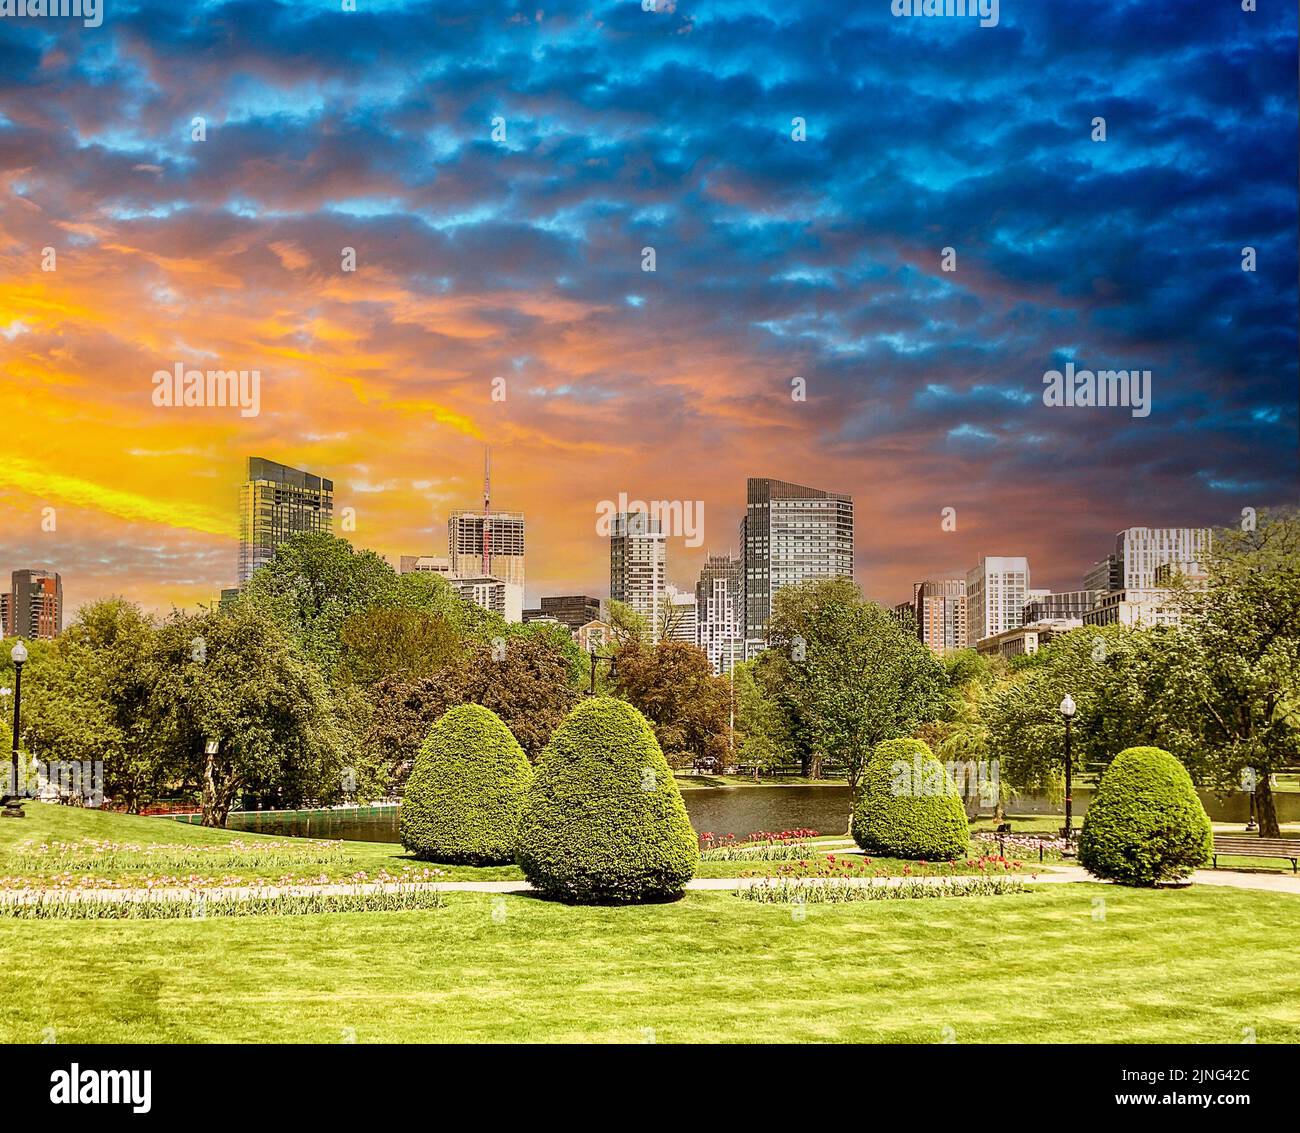 Boston Skyline at Public Garden in Boston, Massachusetts Stock Photo